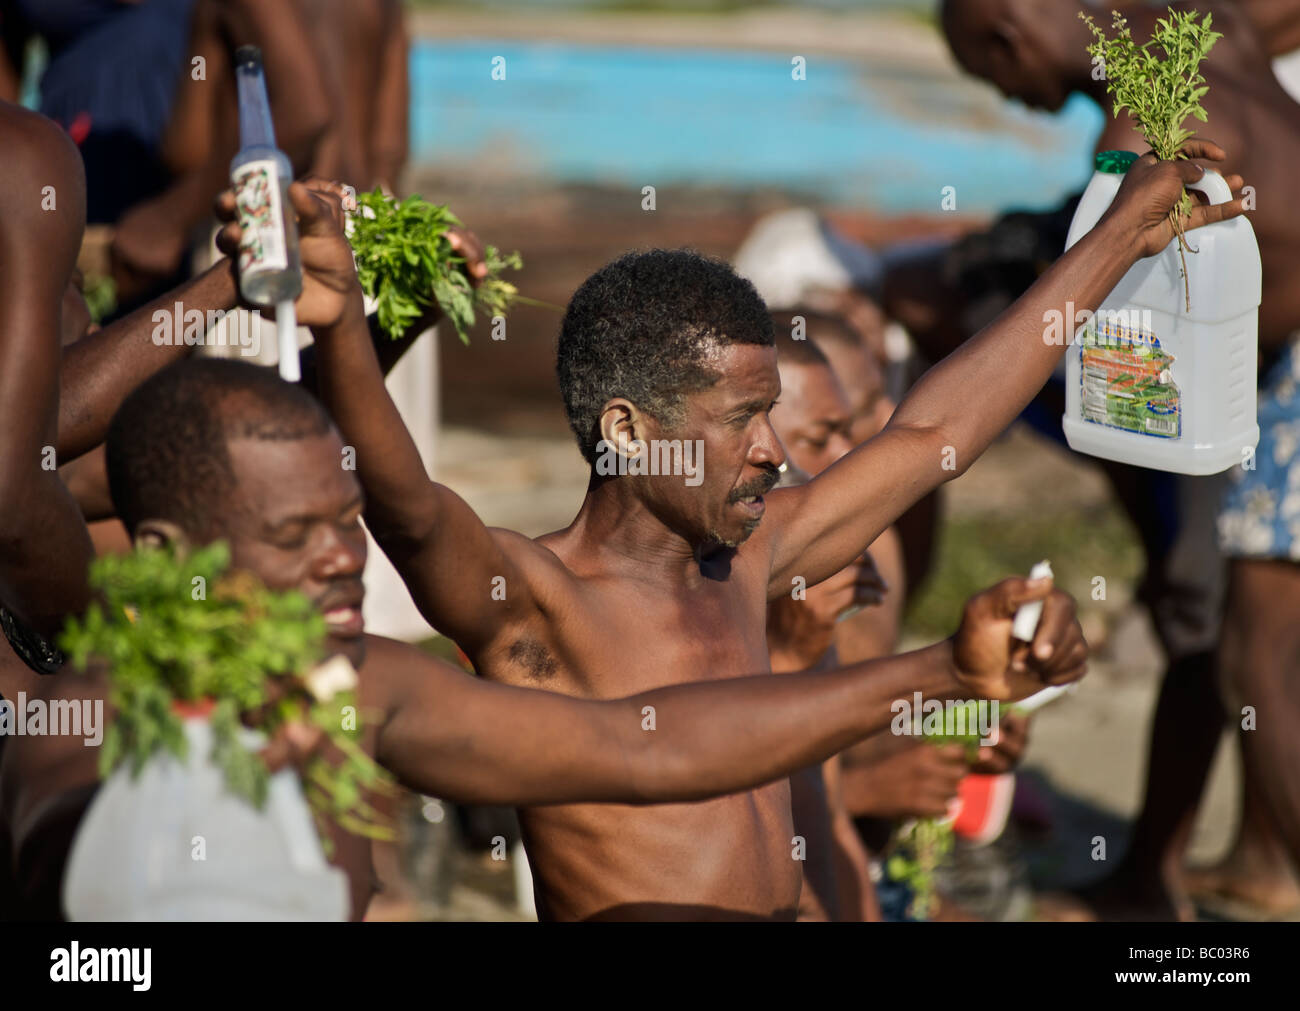 Un groupe d'hommes qui occupent le haut des herbes fraîches et de l'eau pendant un festival vaudou sur la plage en Haïti. Banque D'Images